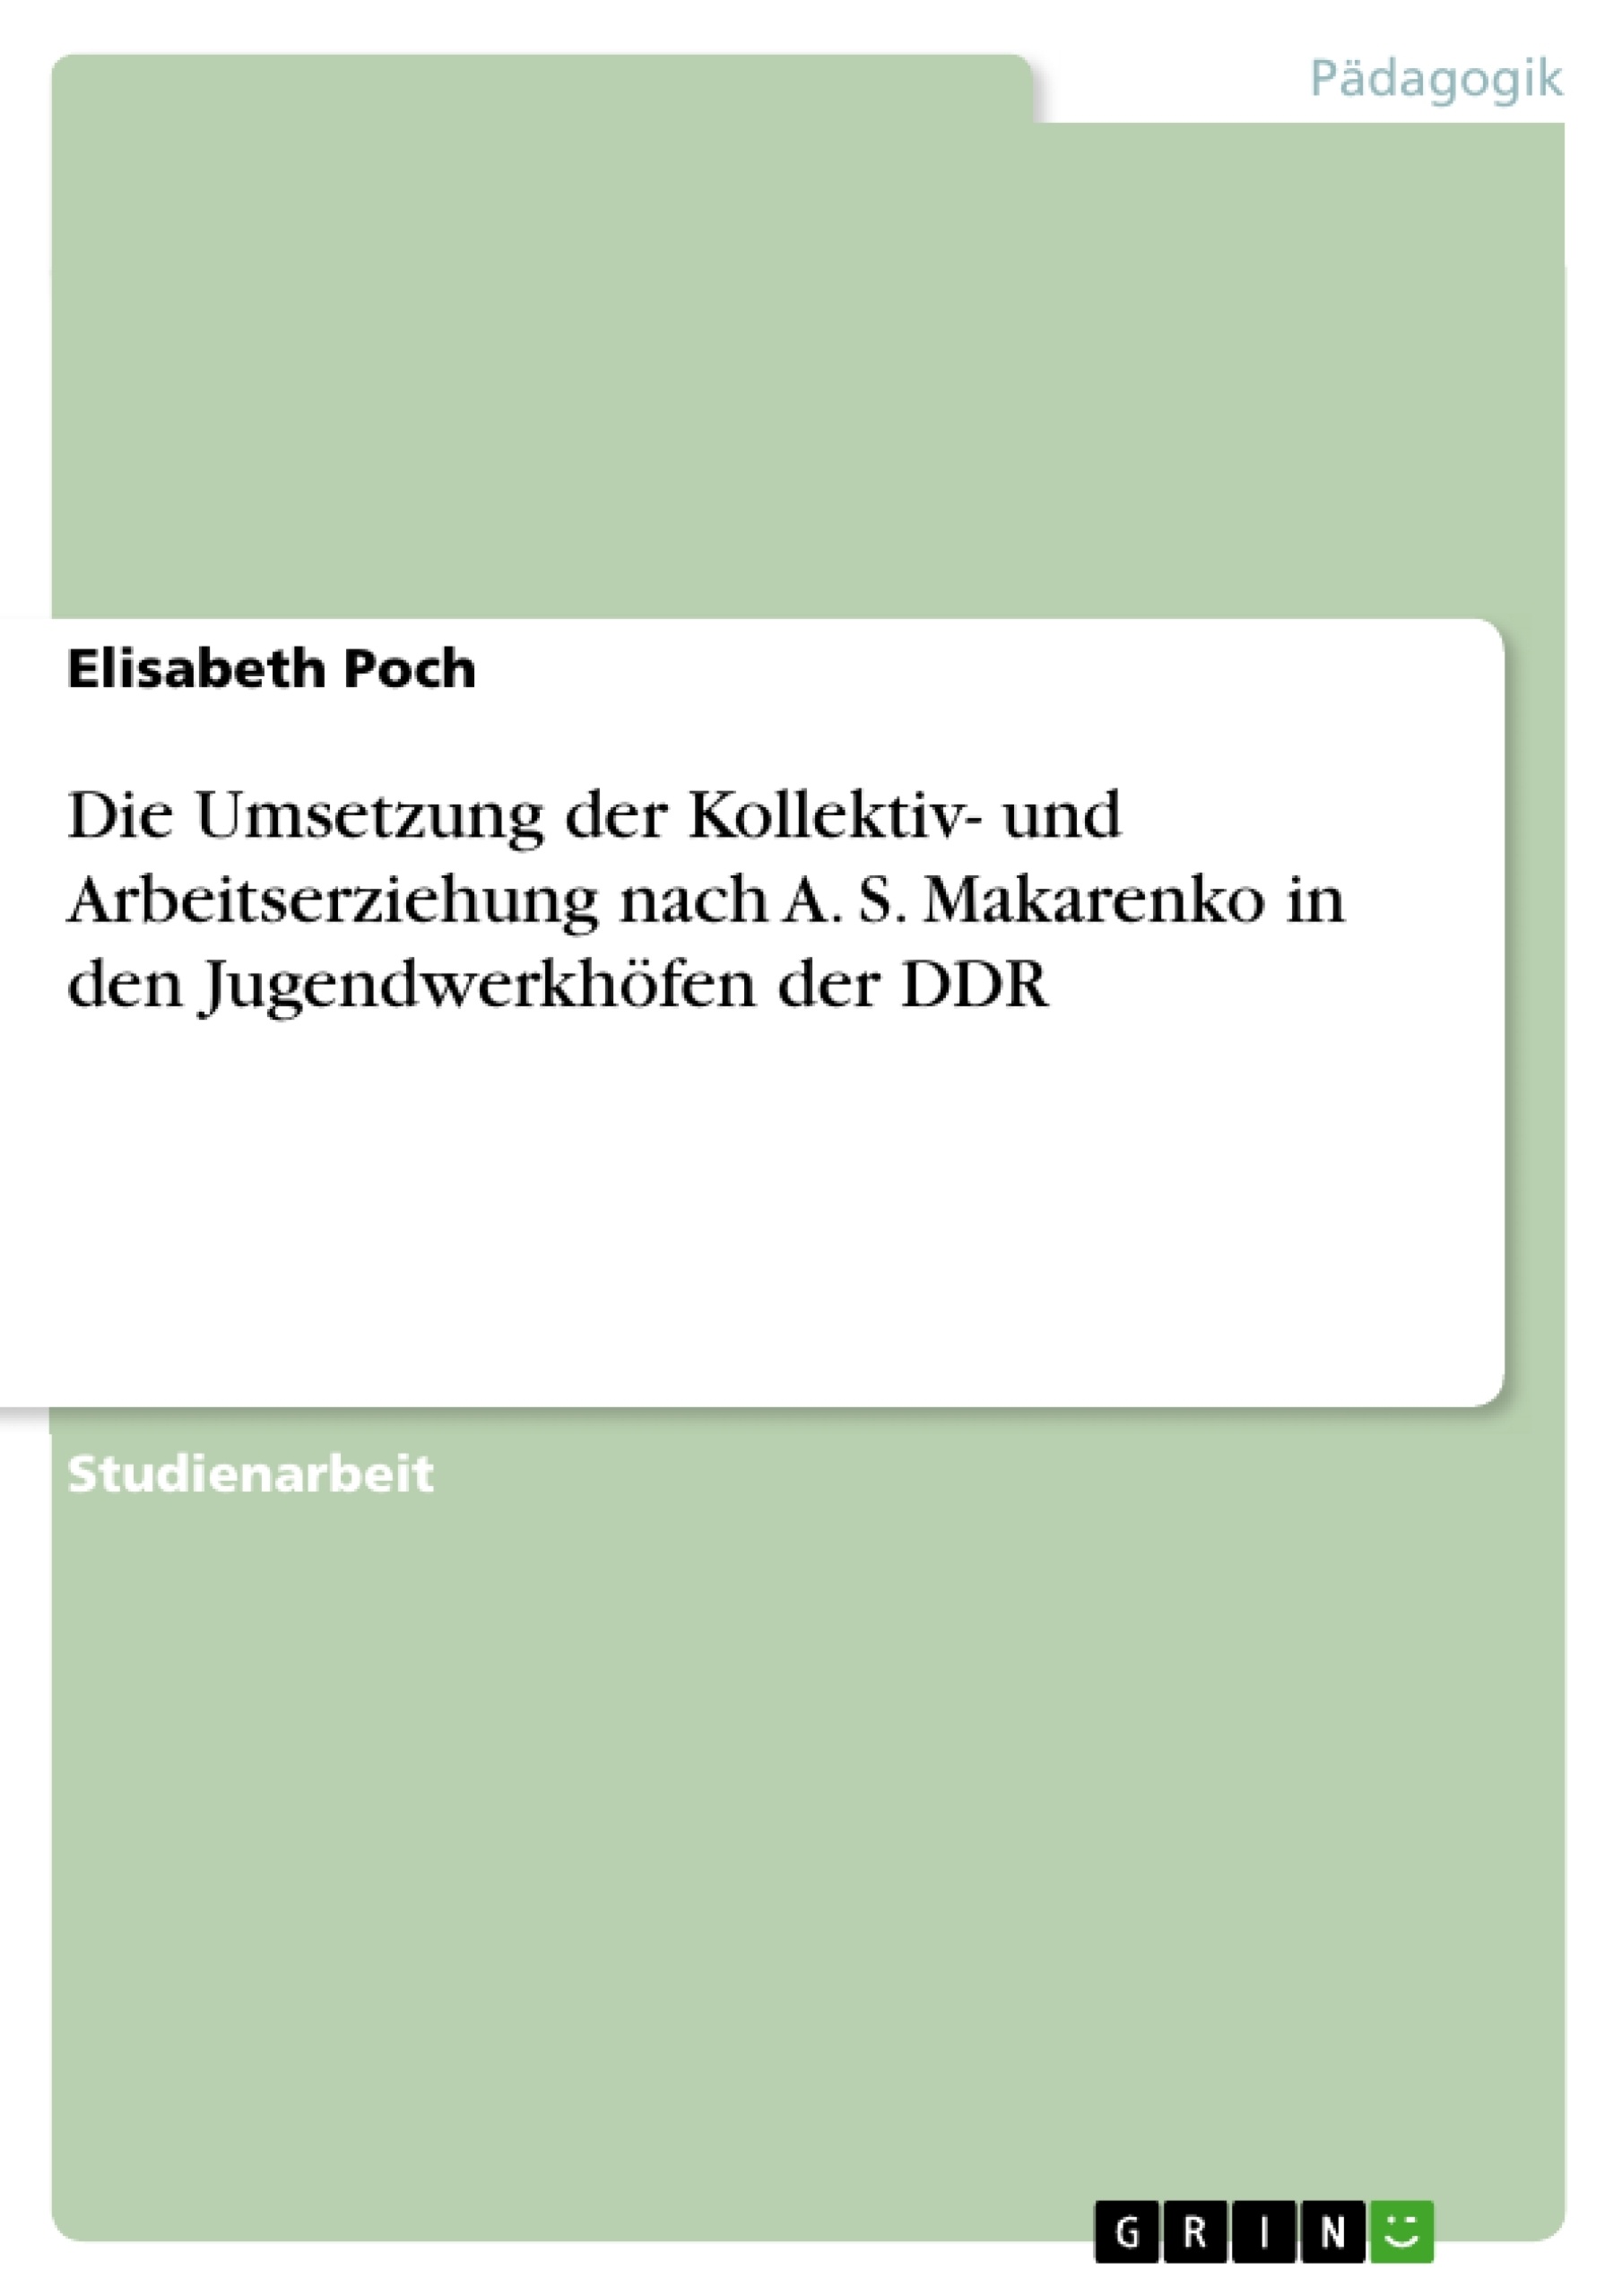 Title: Die Umsetzung der Kollektiv- und Arbeitserziehung nach A. S. Makarenko in den Jugendwerkhöfen der DDR